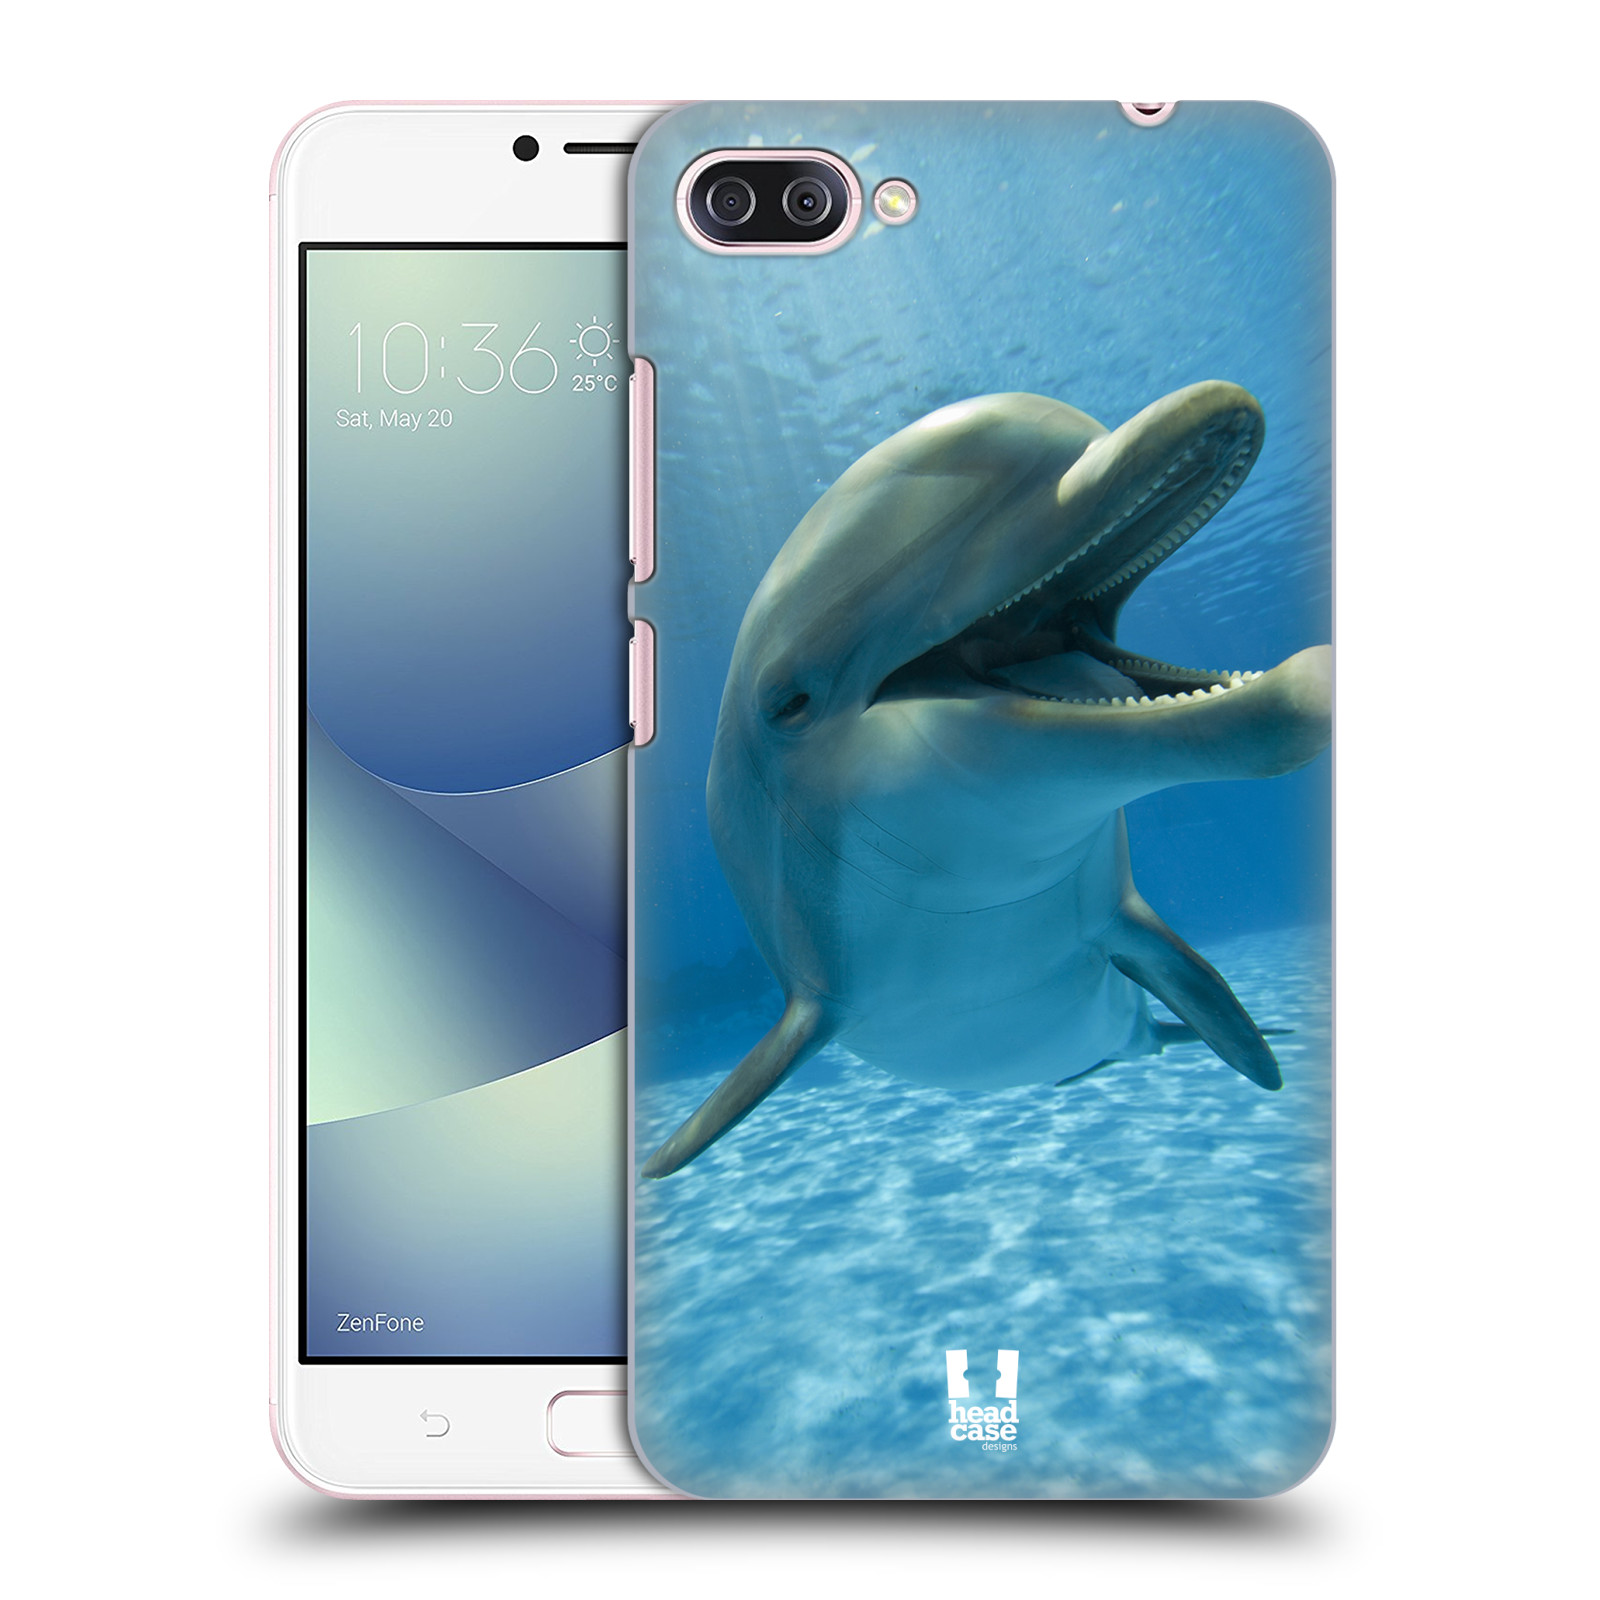 Zadní obal pro mobil Asus Zenfone 4 MAX / 4 MAX PRO (ZC554KL) - HEAD CASE - Svět zvířat delfín v moři